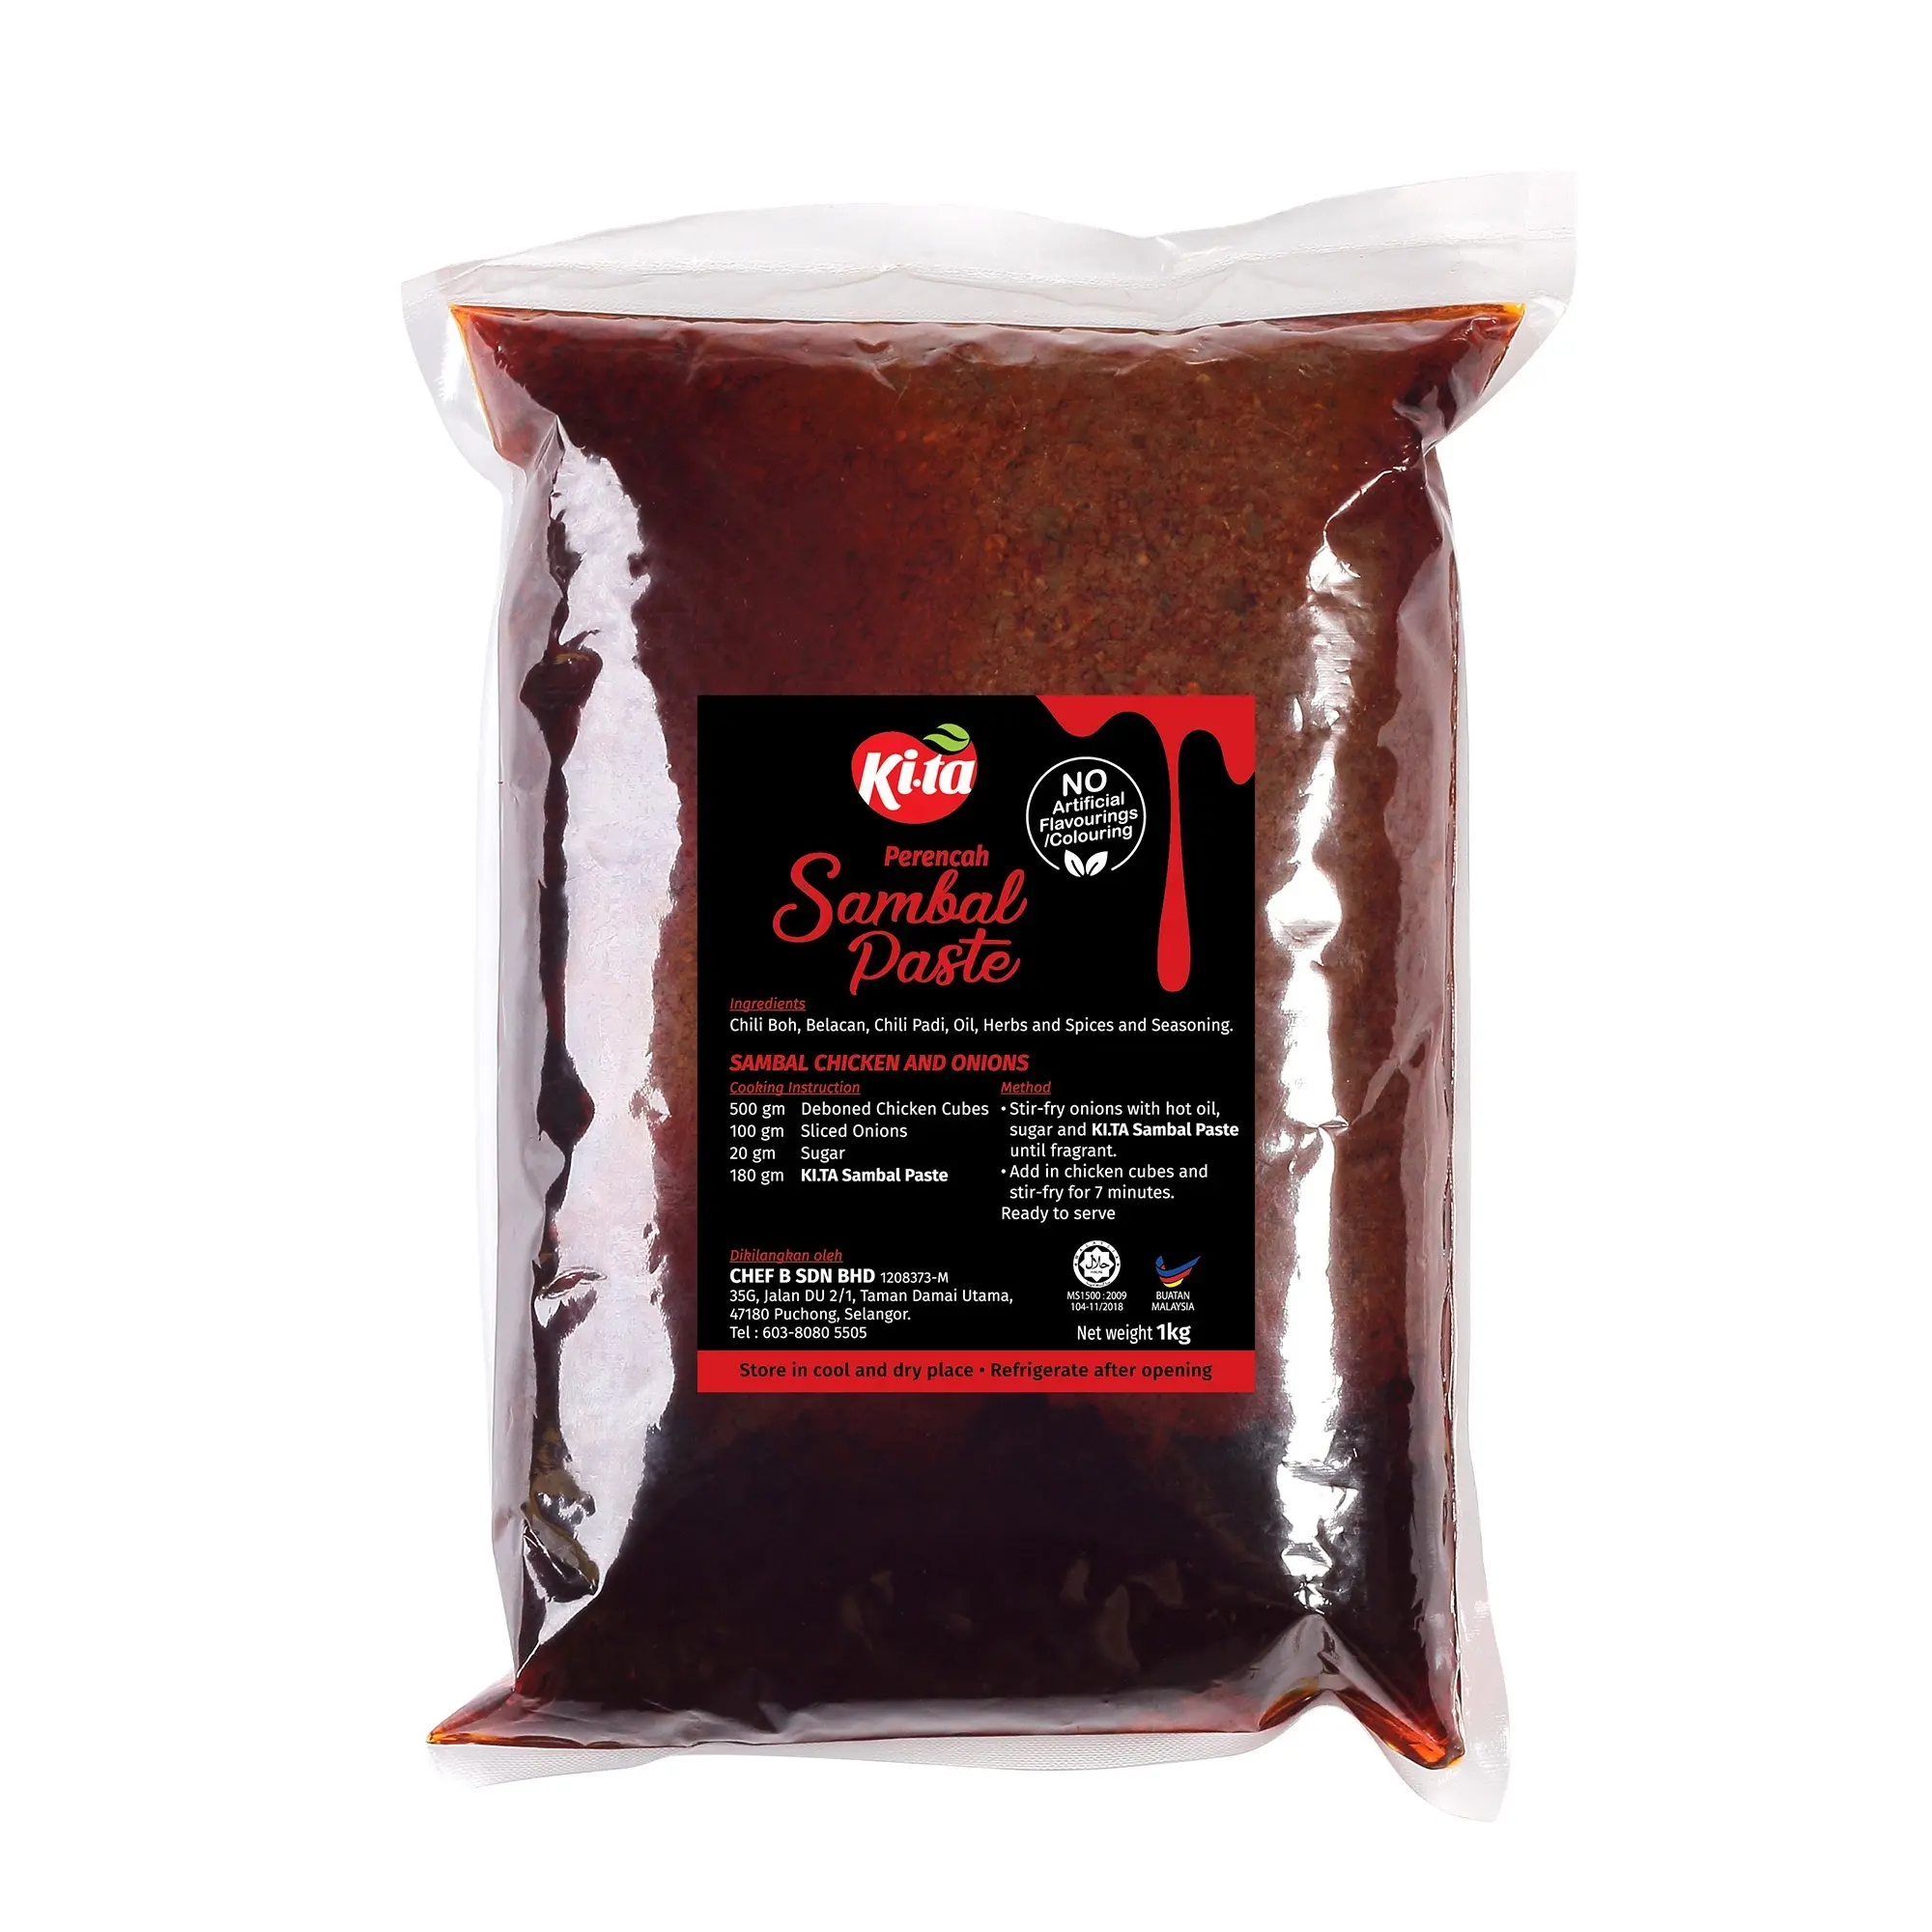 Паста Sambal, паста Чили креветки (Belacan), 1 кг в упаковке (бренд KI.TA), Малайзия, Халяль, Вес нетто (1 кг в упаковке)